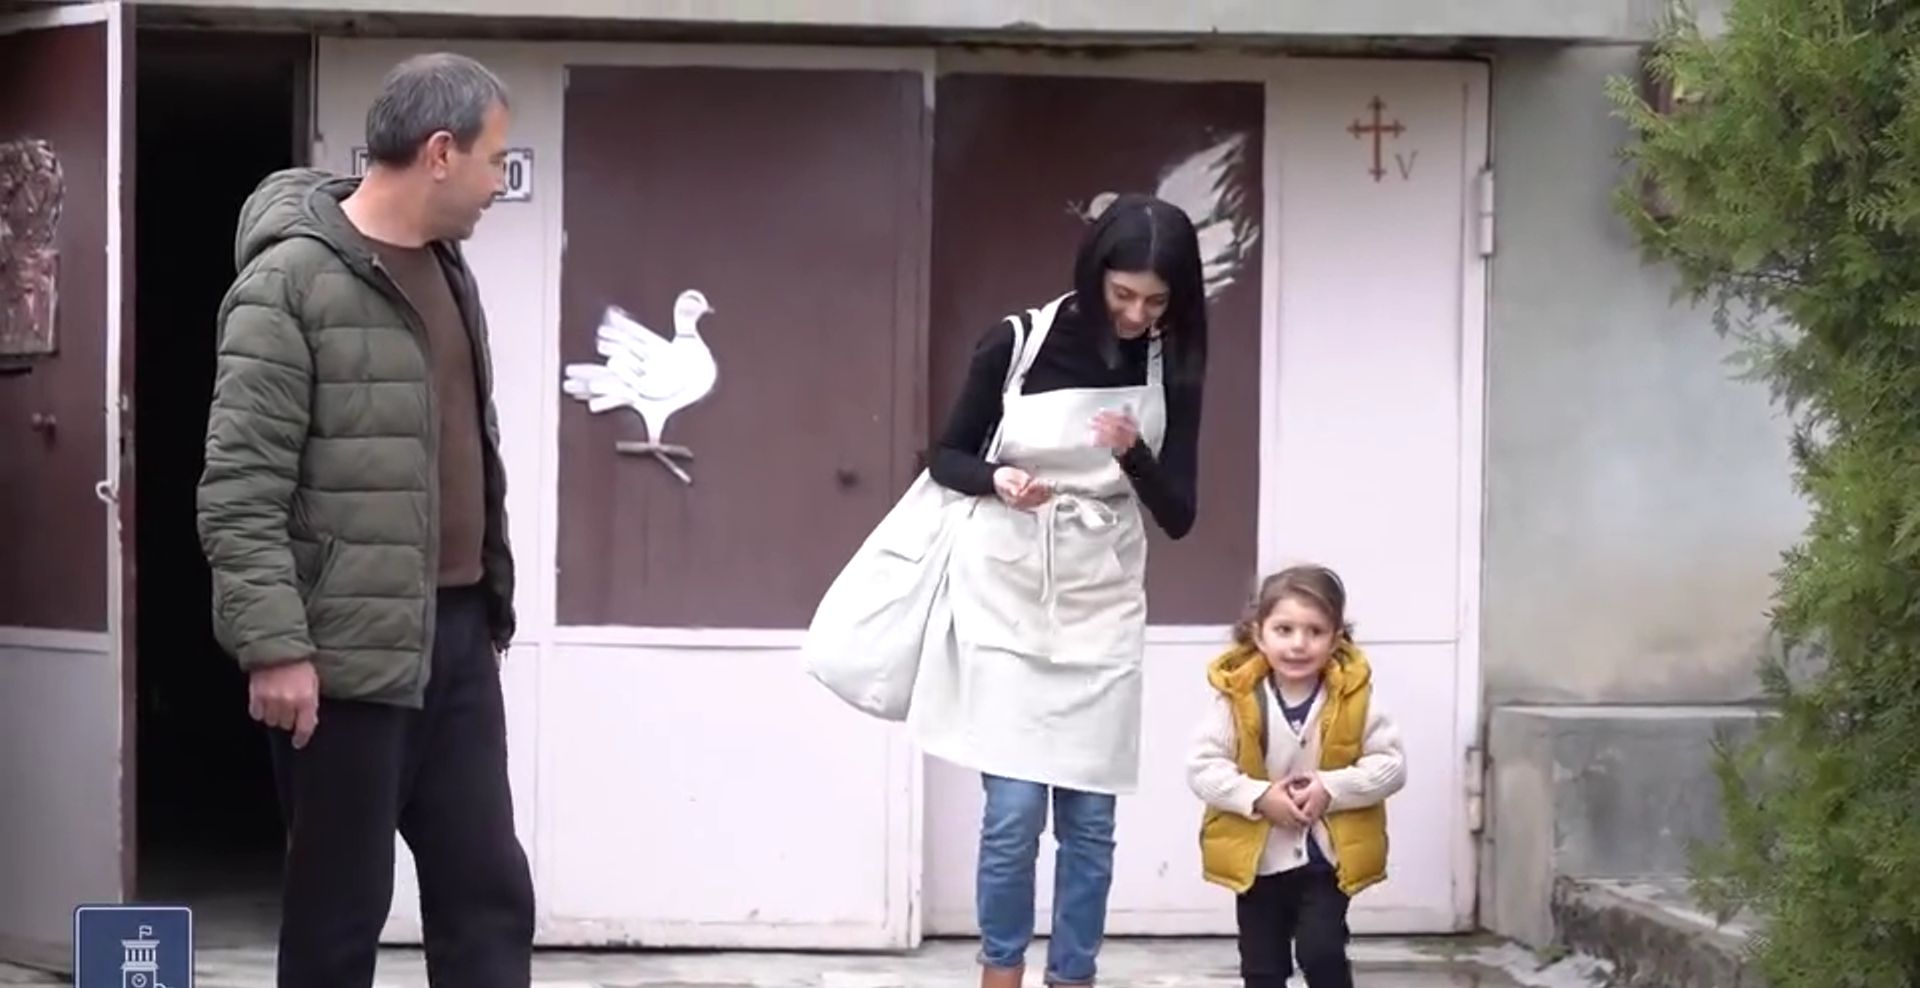 ԼՂ-ից բռնի տեղահանված Էլինա Բալասանյանը փոքրիկ թռչնաբուծական ֆերմա է հիմնել (տեսանյութ)